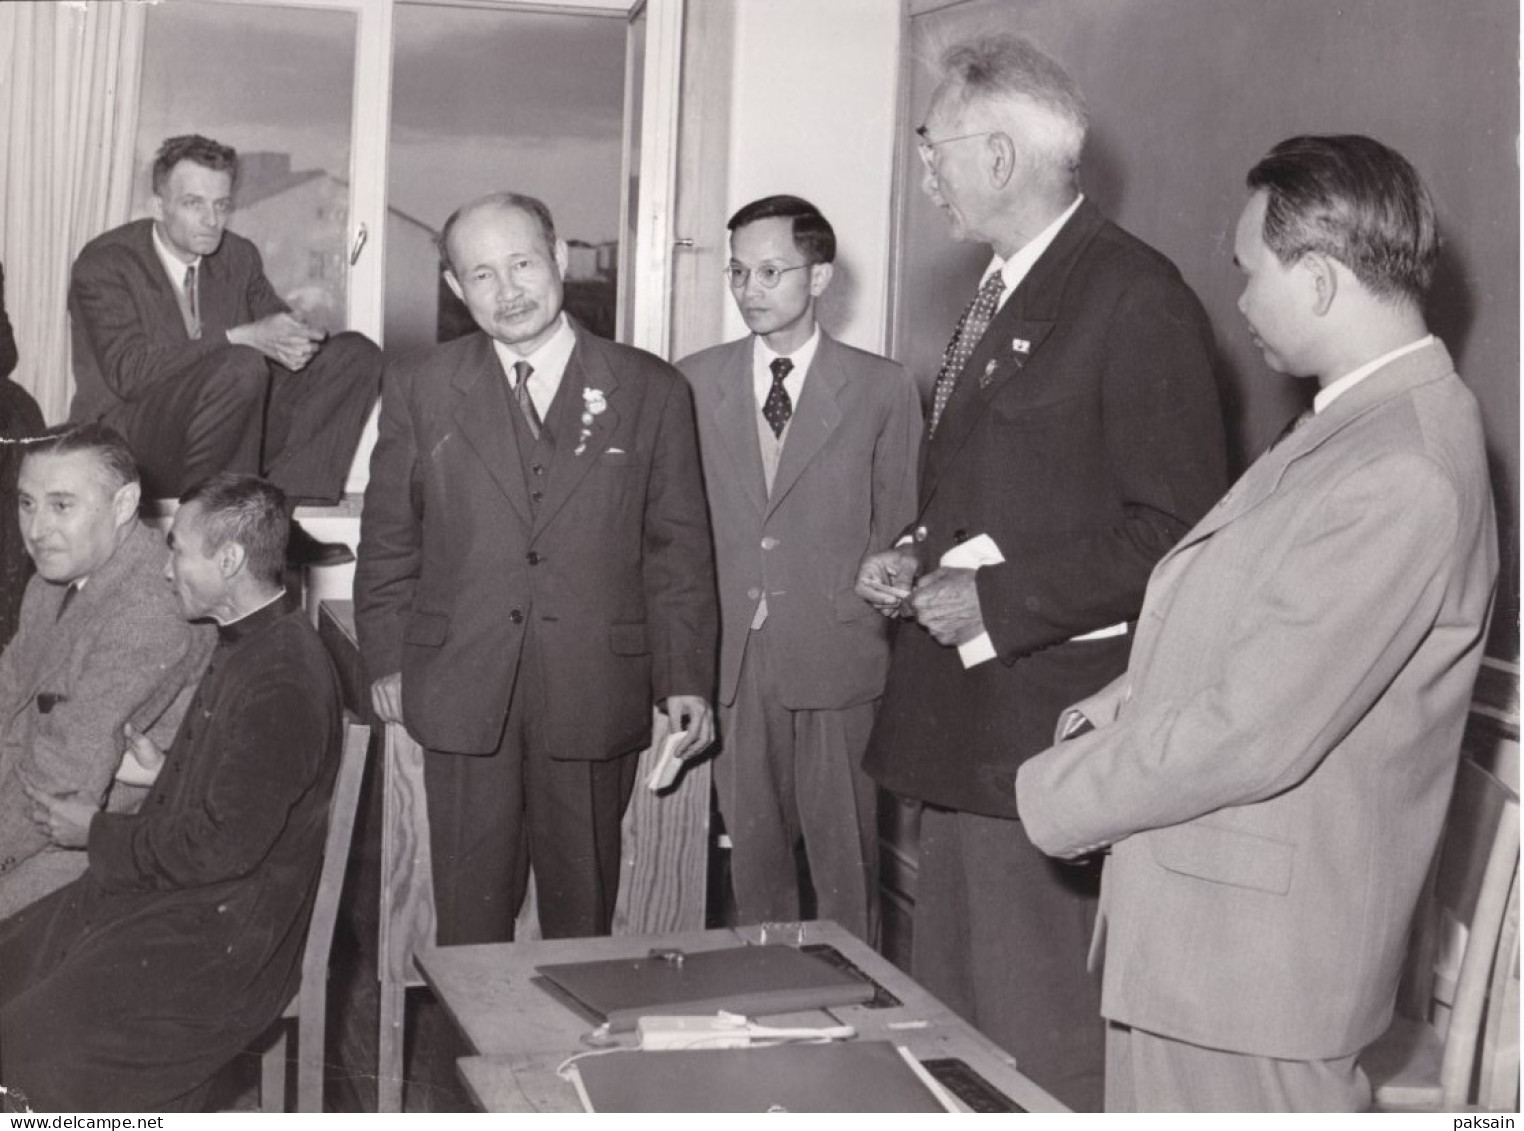 220 photos & cpa de la Collection M. NER au Nord VIETNAM en 1955 avec Ho Chi Minh Communisme en Indochine